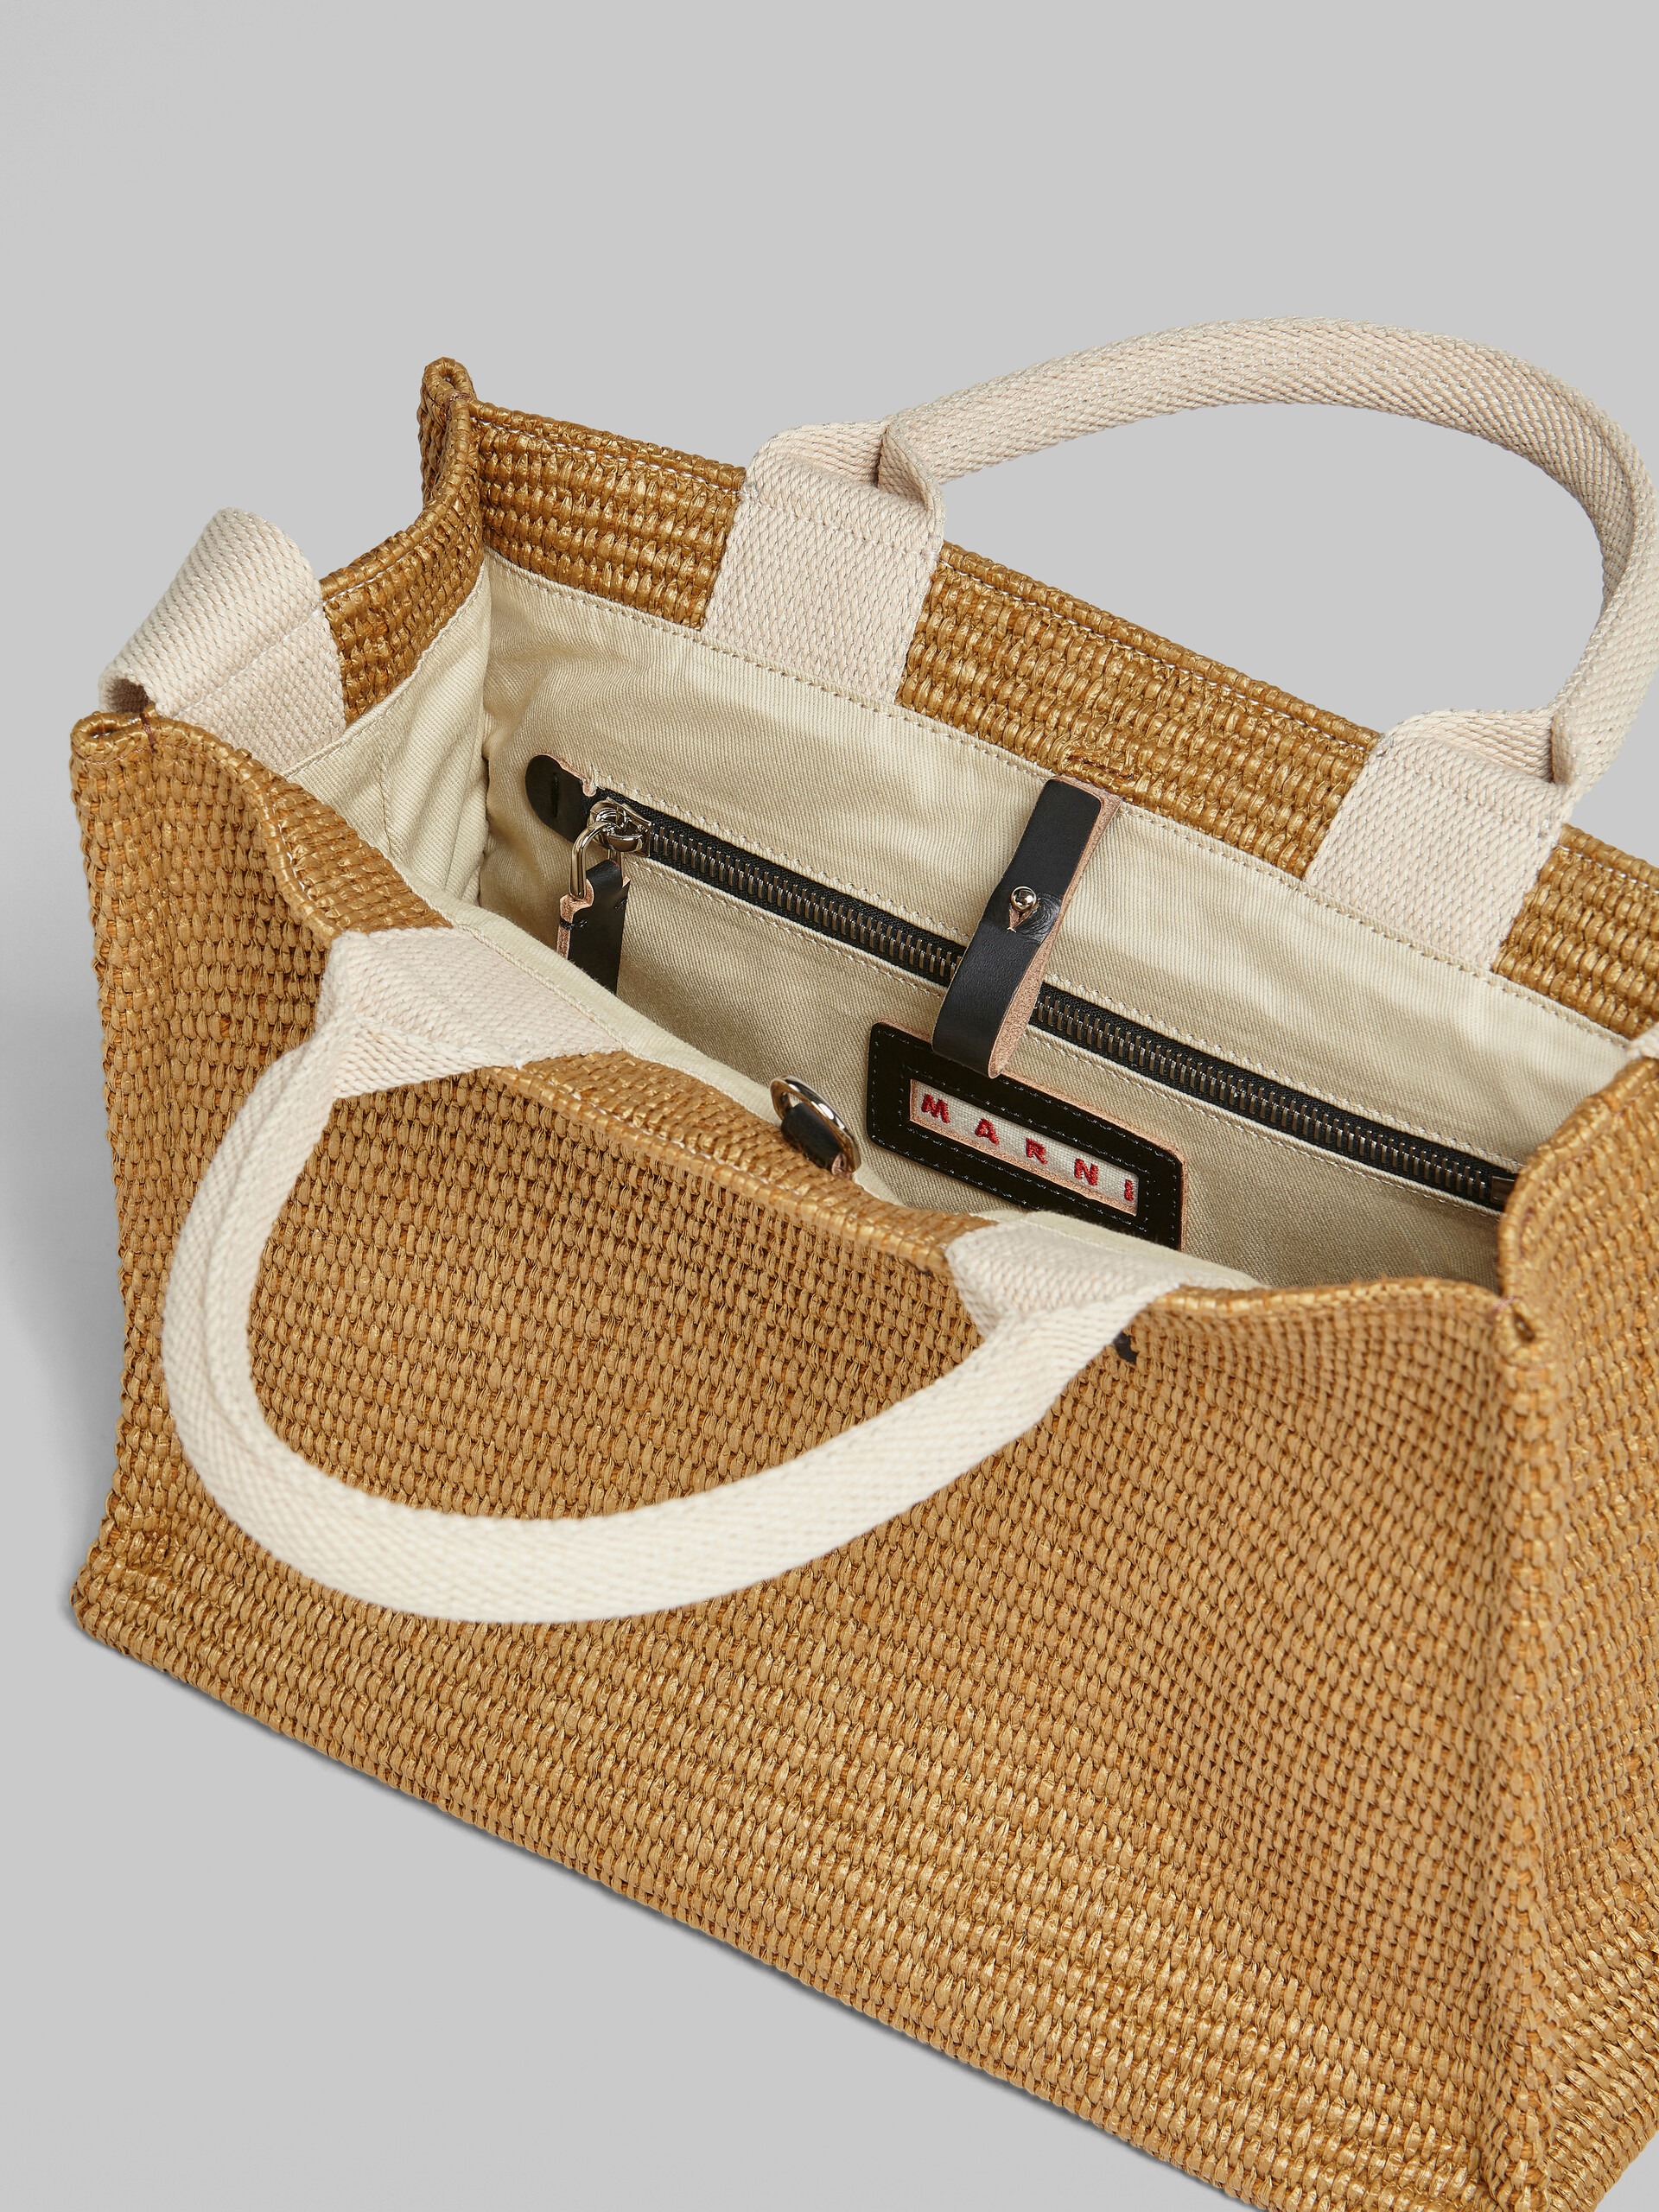 Natural raffia Small Tote Bag - Shopping Bags - Image 4